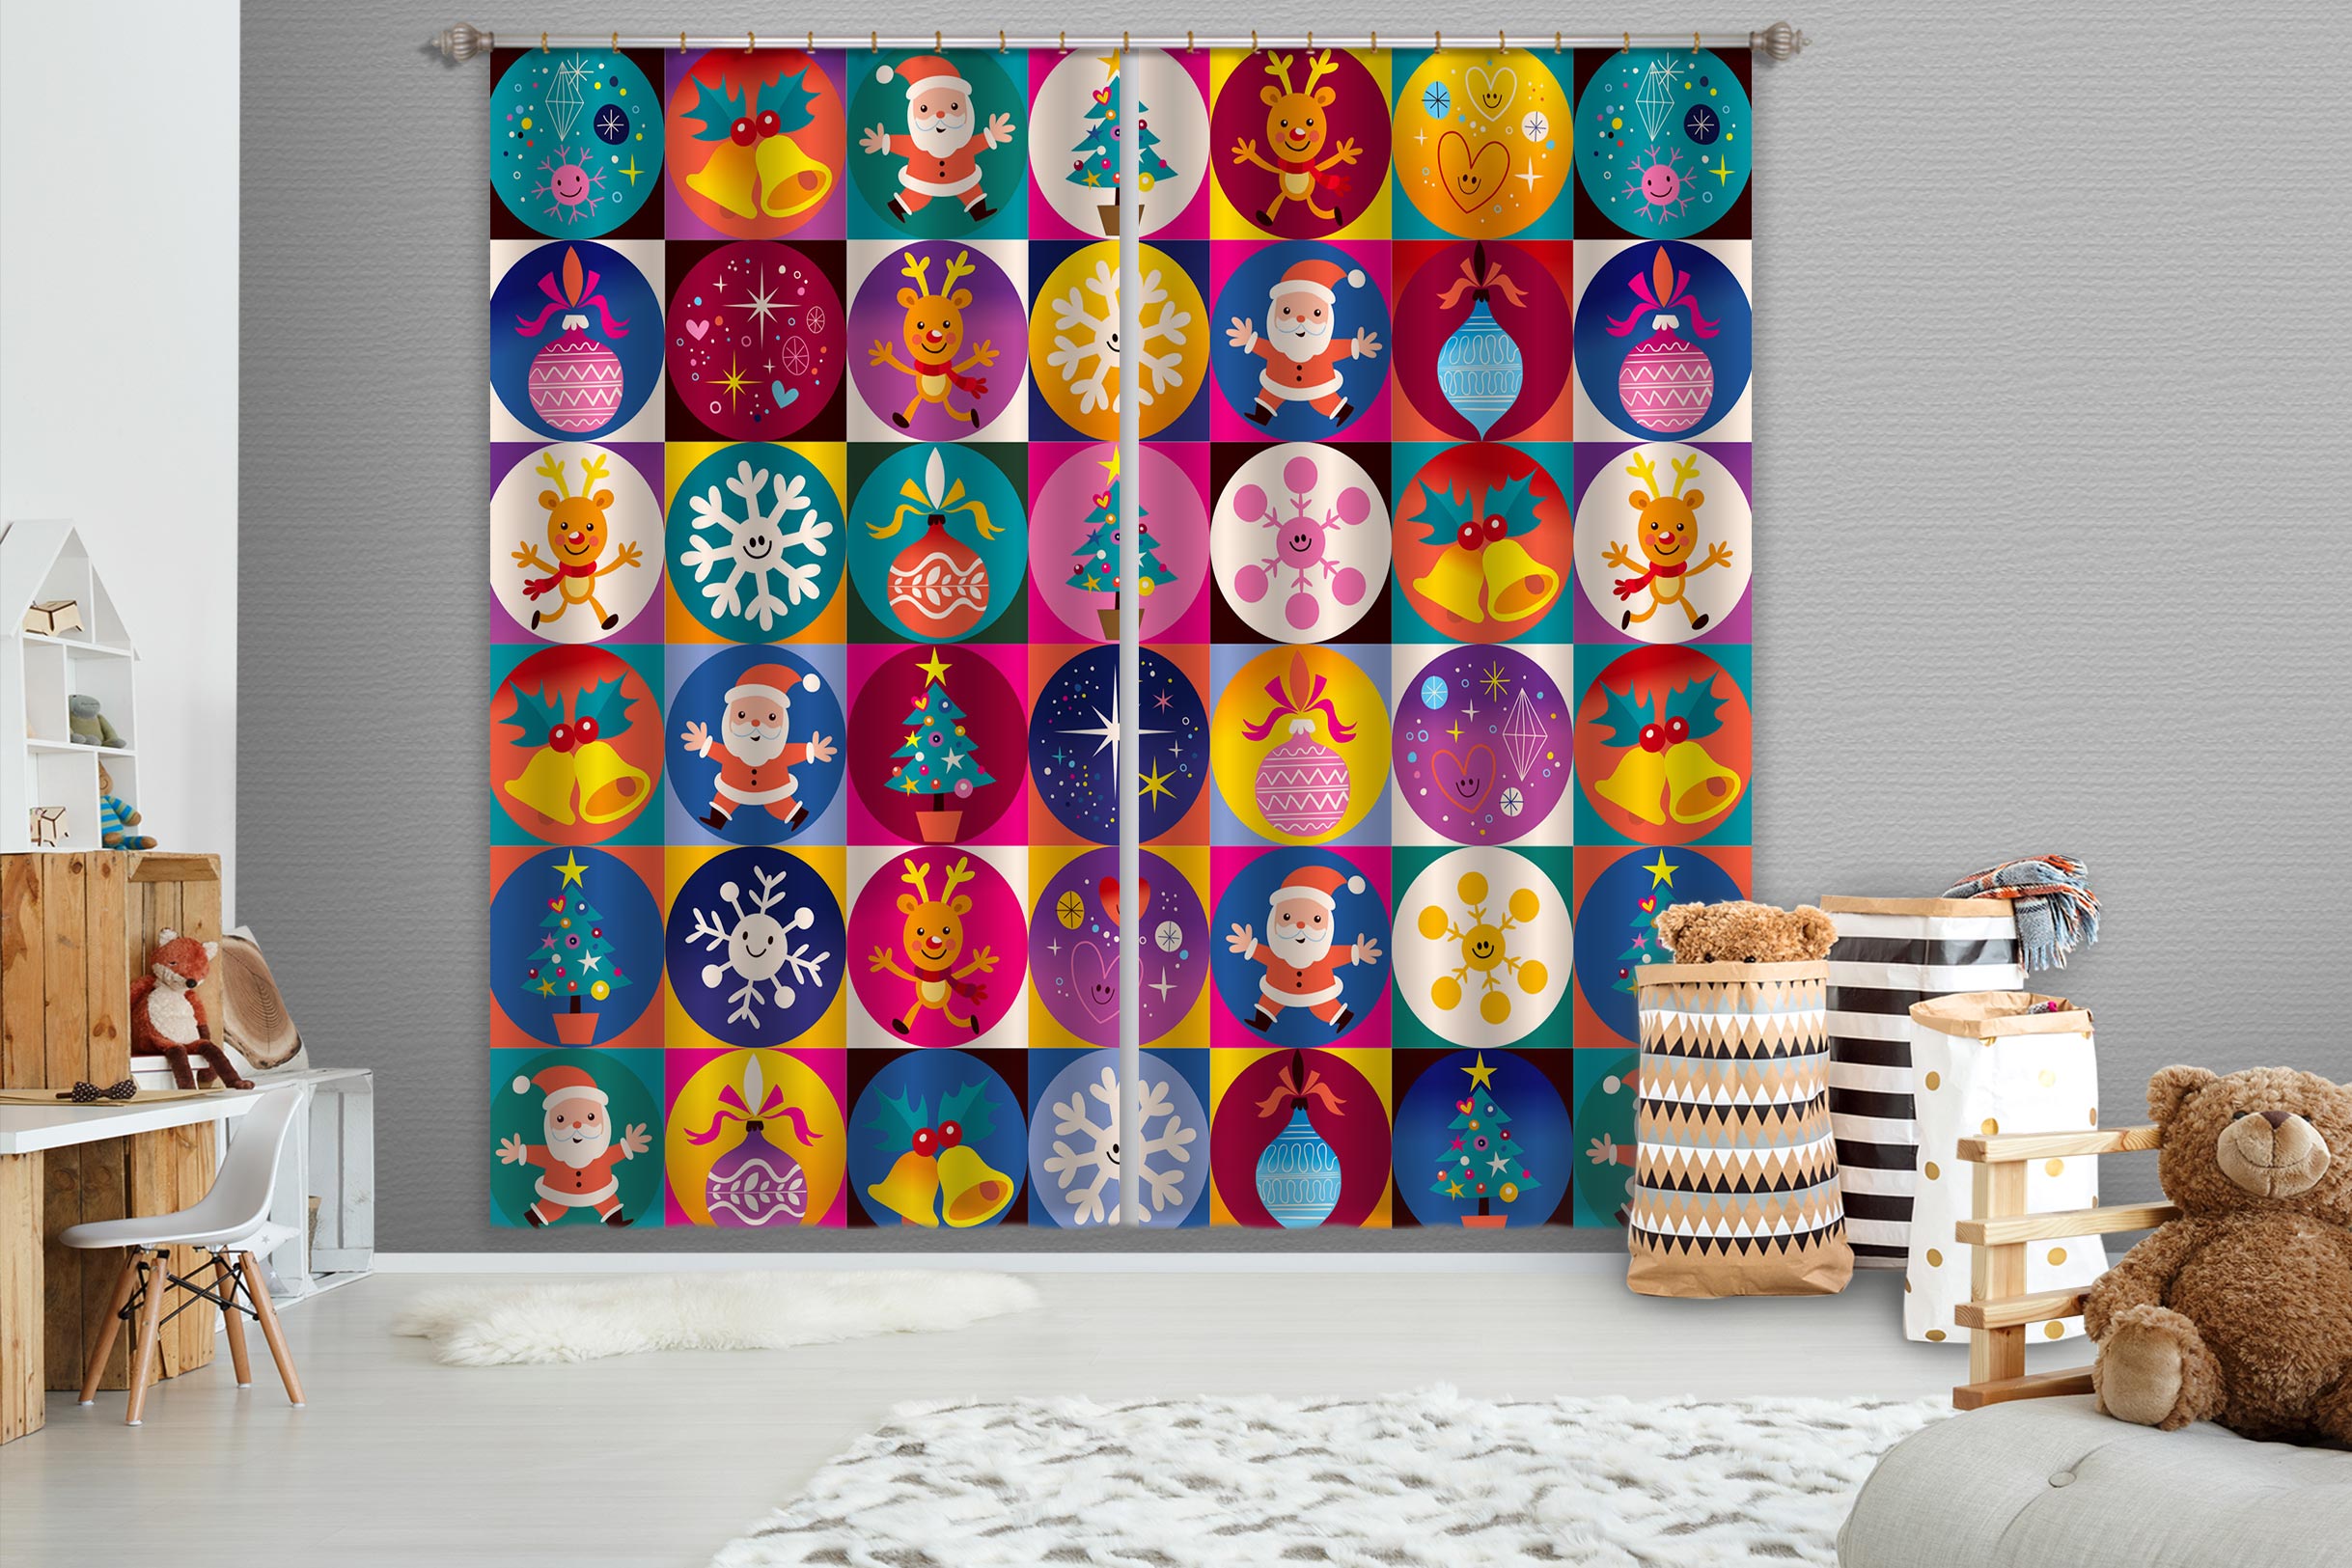 3D Colorful Circle Snowflake Santa 52026 Christmas Curtains Drapes Xmas